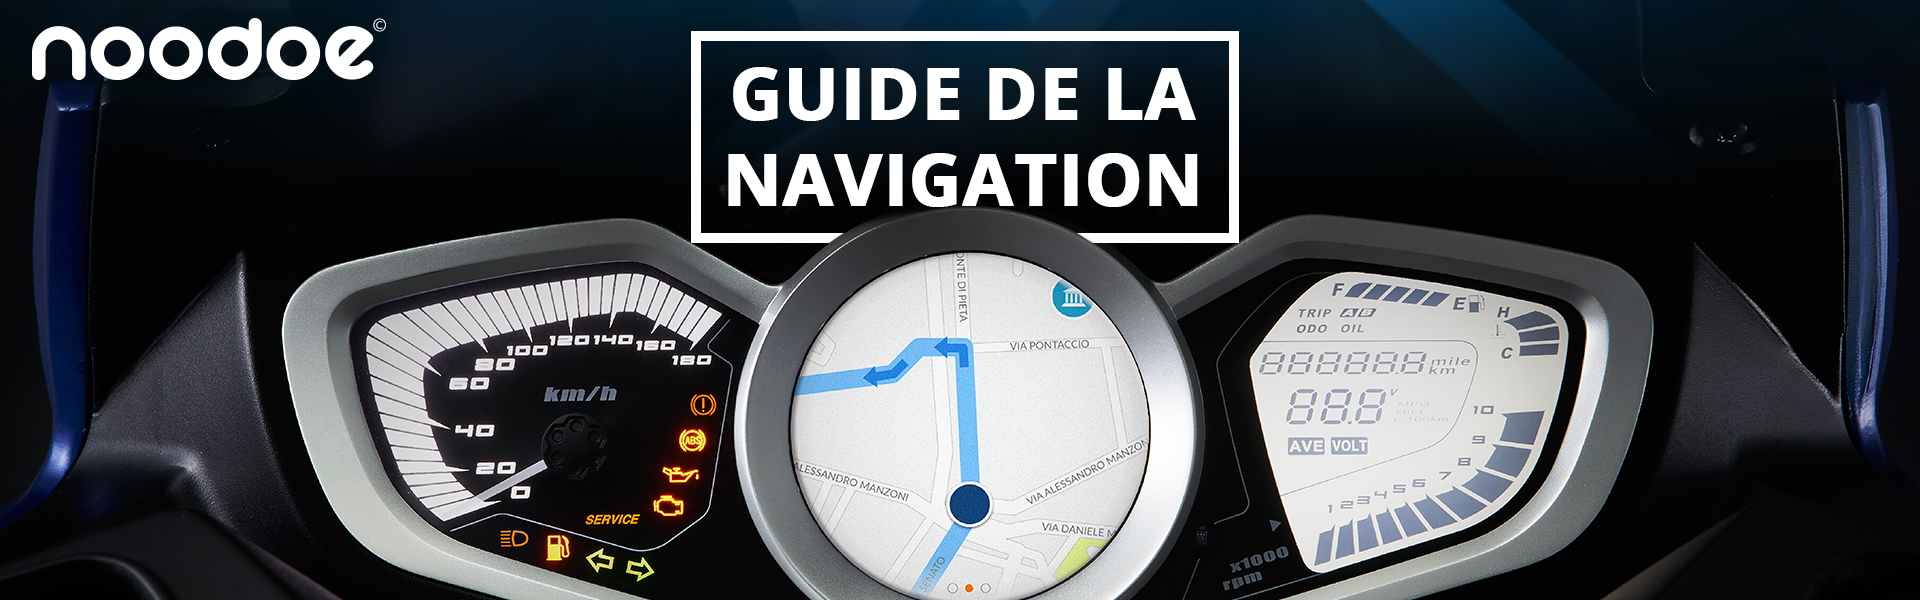 guide-navigation-nooodoe